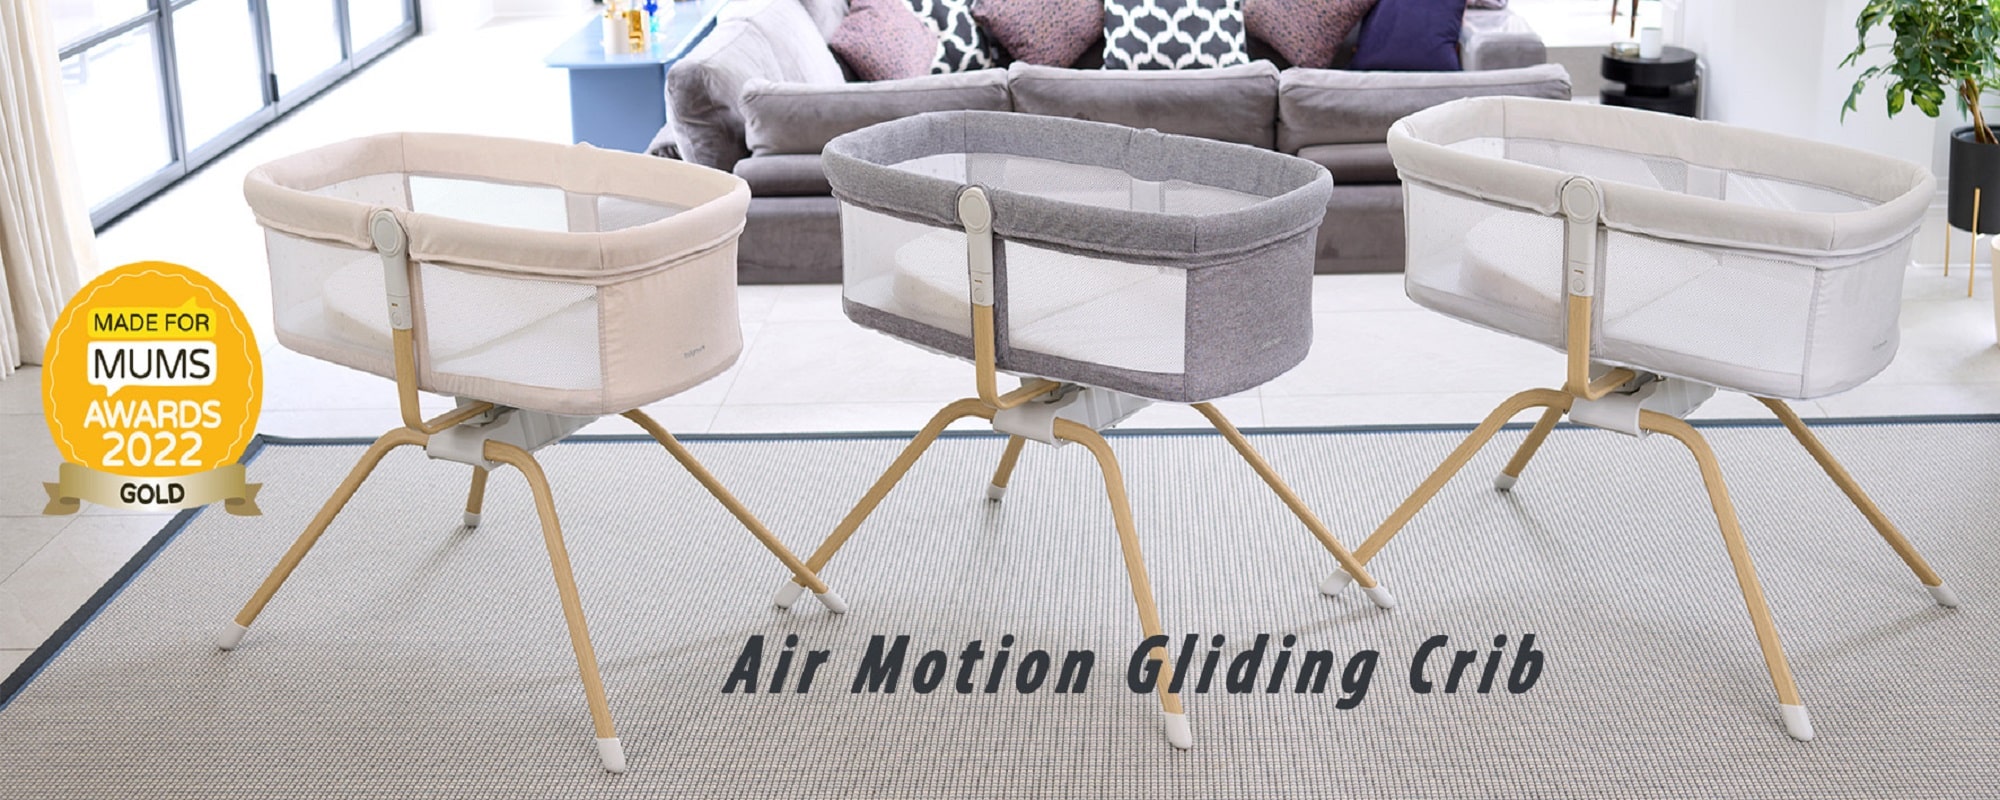 Air motion crib banner